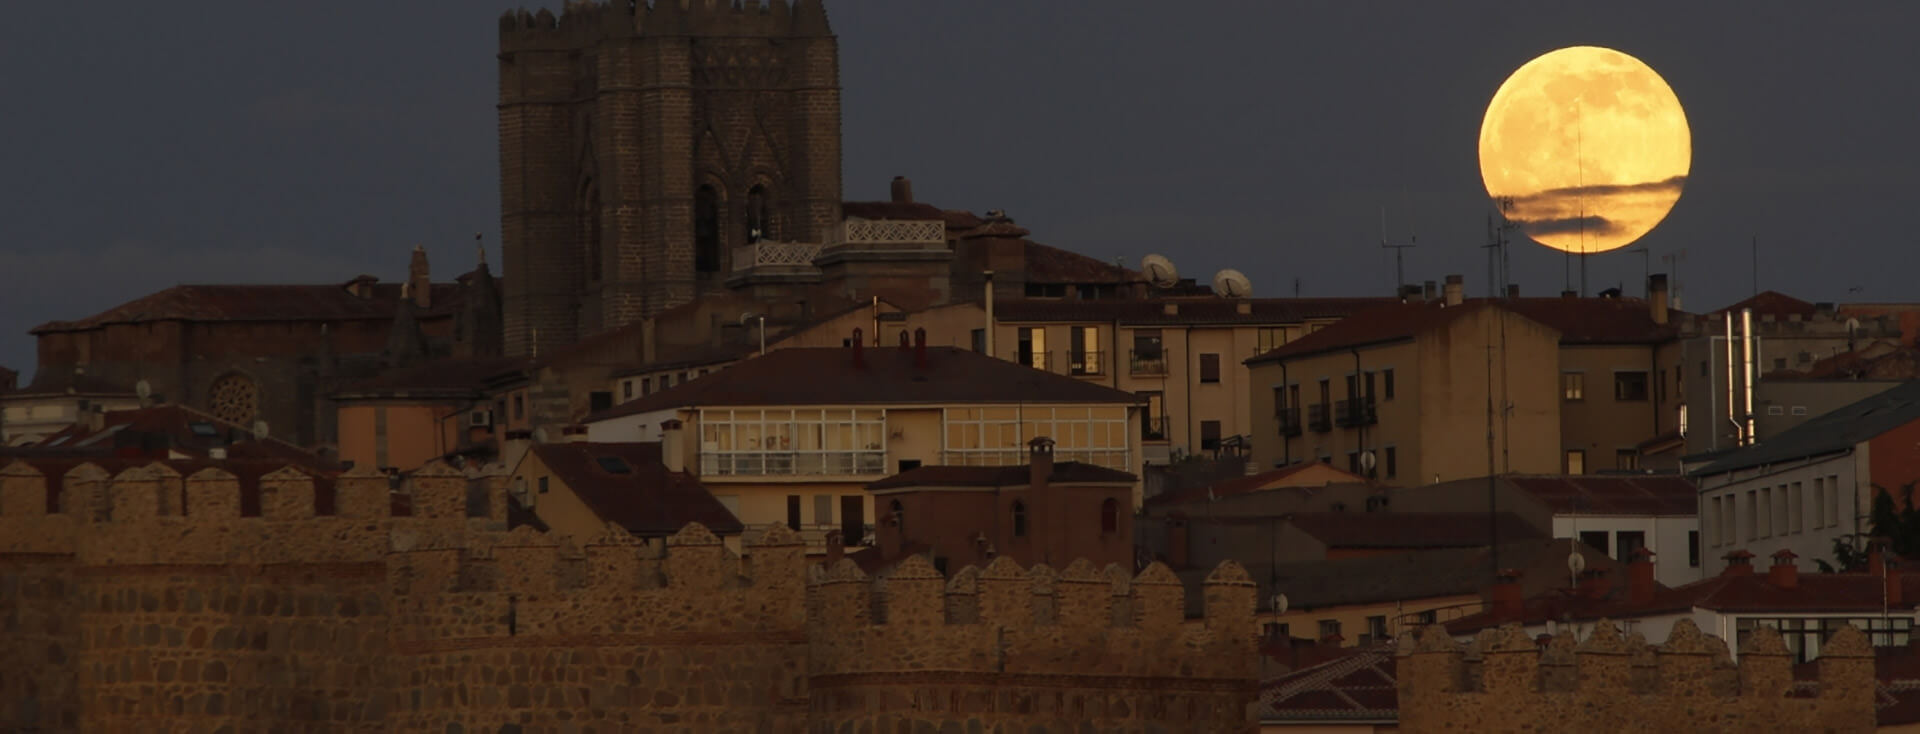 Vista nocturna de la Muralla de Ávila